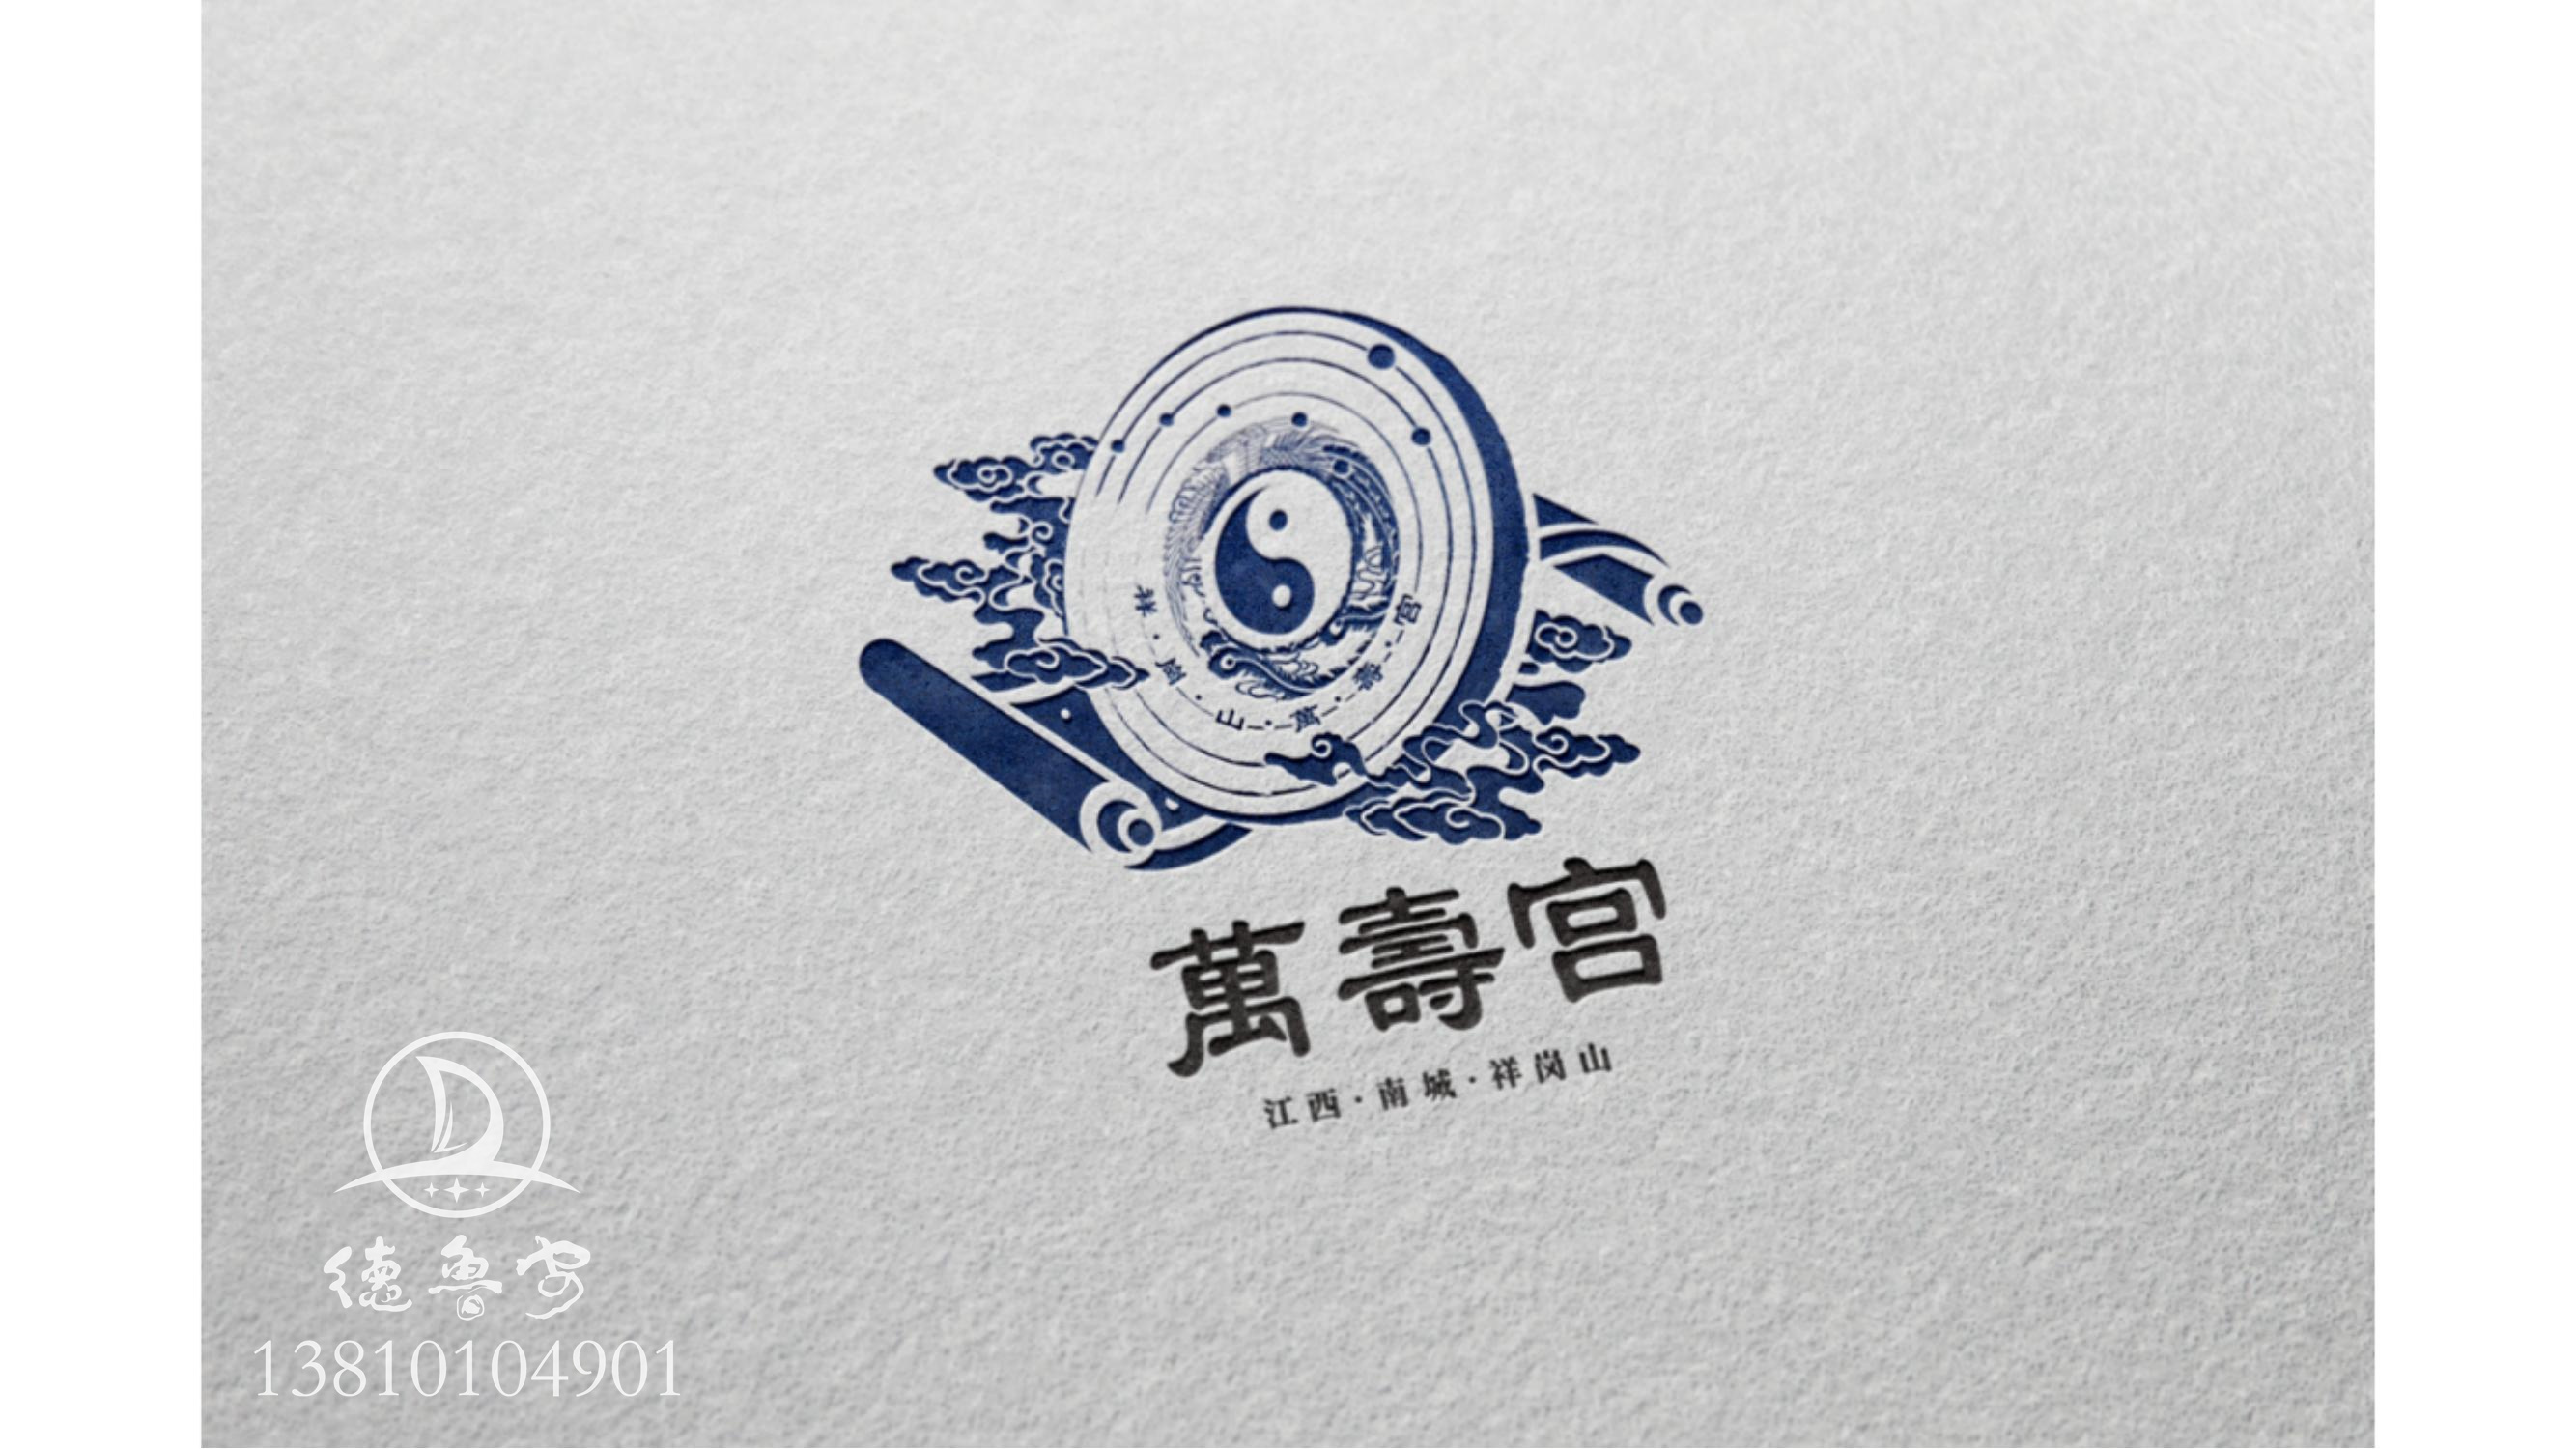 万寿宫logo定稿方案_05.jpg